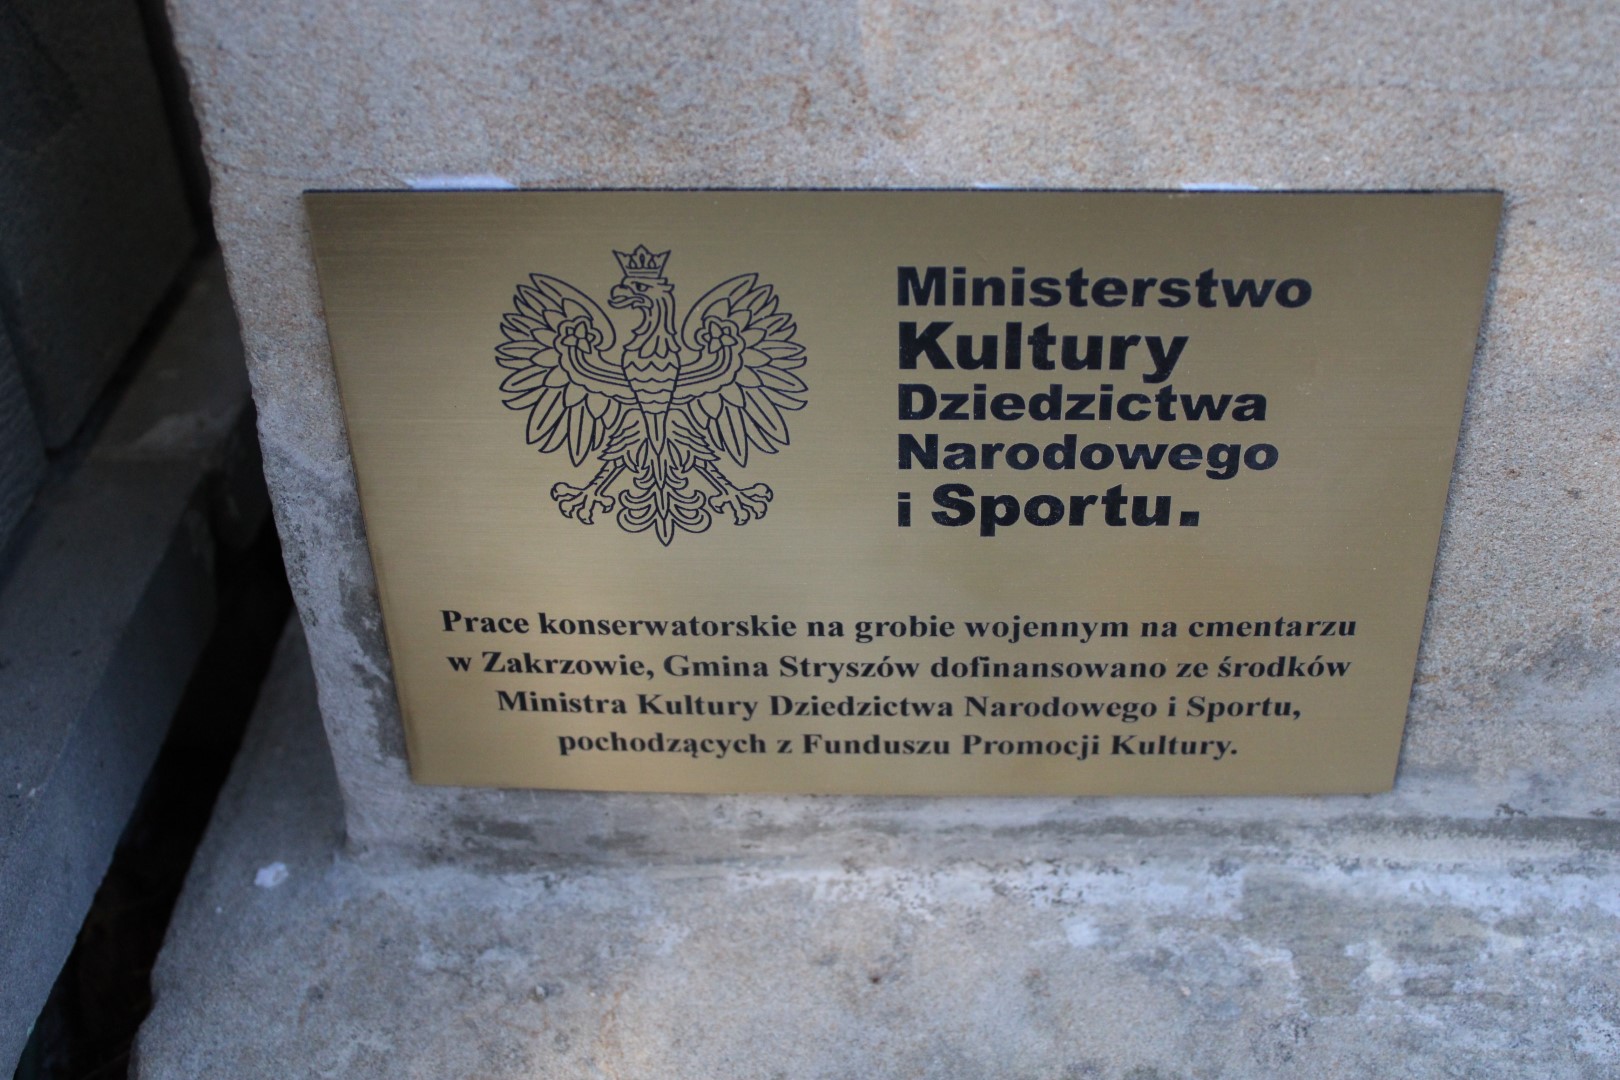 tabliczka informująca o tym, że renowację grobu sfinansowano ze środków Ministra Kultury, Dziedzictwa Narodowego i Sportu pochodzących z Funduszu Promocji Kultury